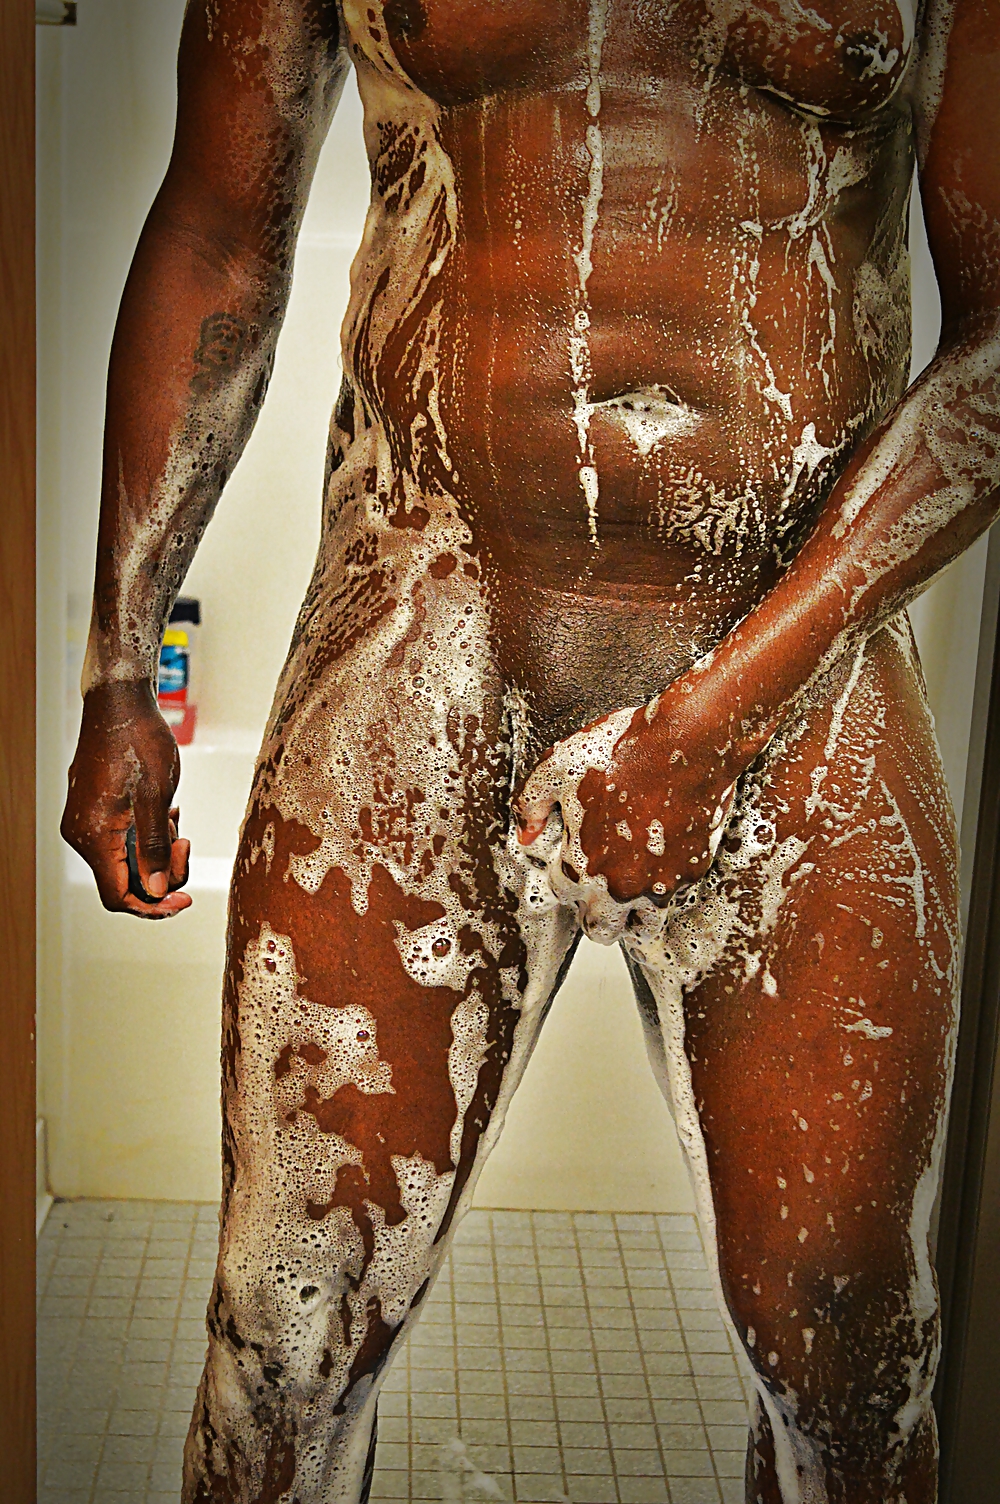 Black Shower Dick - BIG BLACK DICK Shower Porn Pictures, XXX Photos, Sex Images #1008271 -  PICTOA